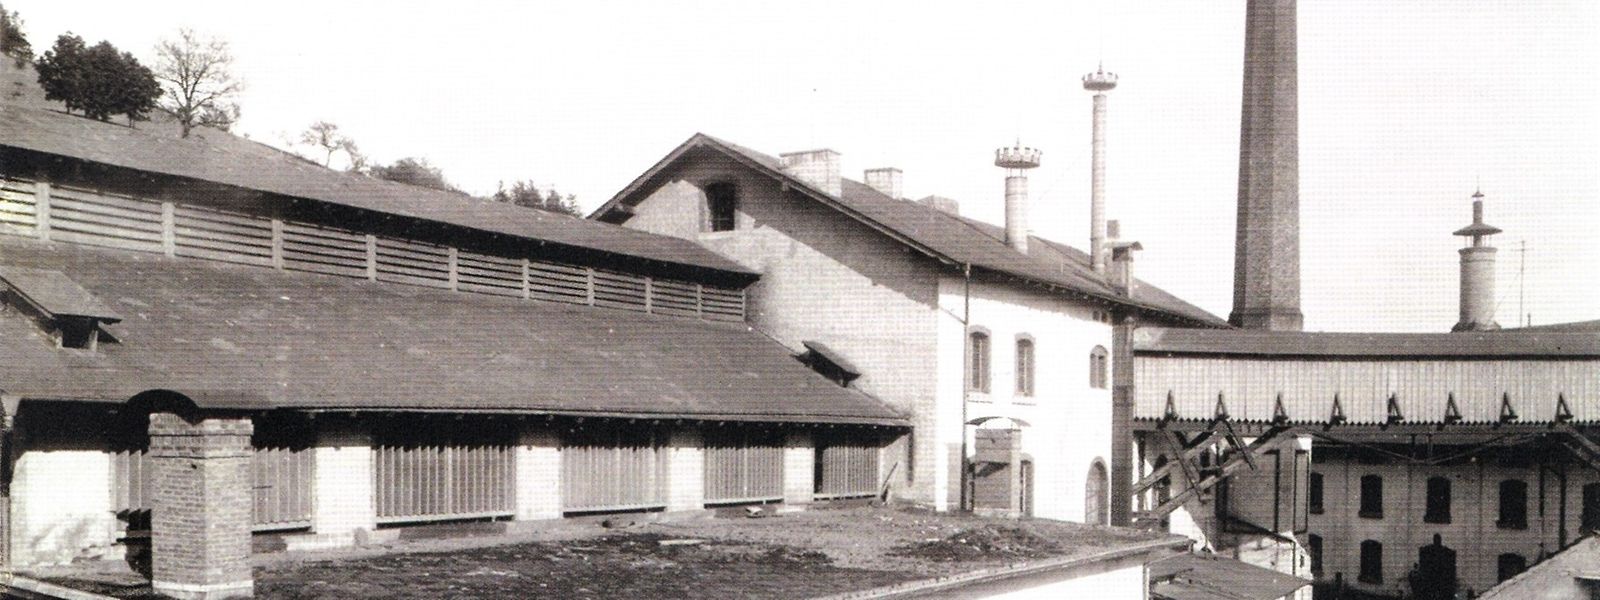 Die Gebäude der Brauerei im Bamertal, um 1885.